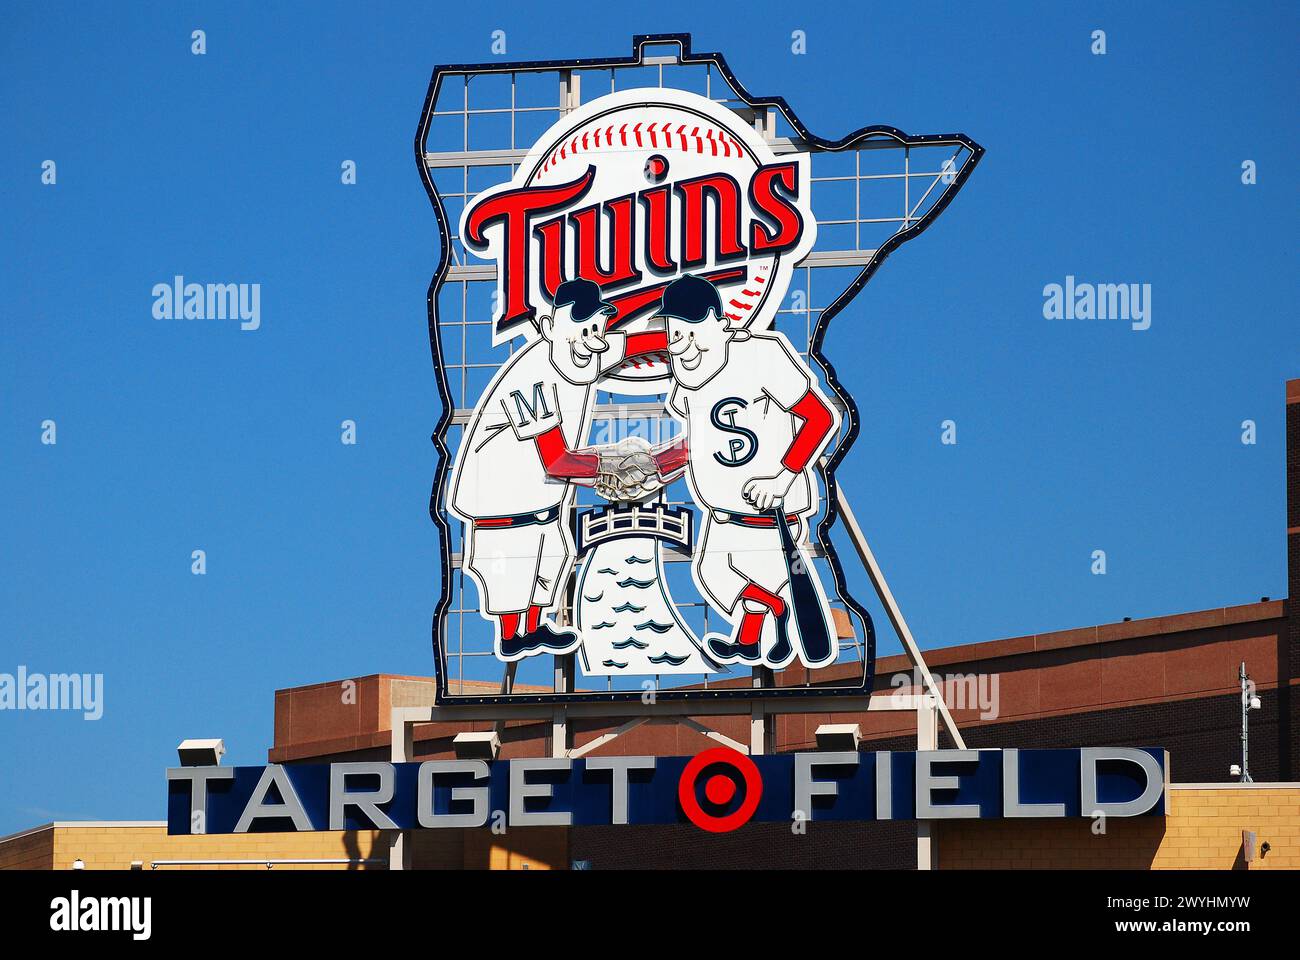 Minnie und Paul schütteln die Hände auf dem Emblem der Minnesota Twins und hängen über dem Target Field Baseballstadion Stockfoto